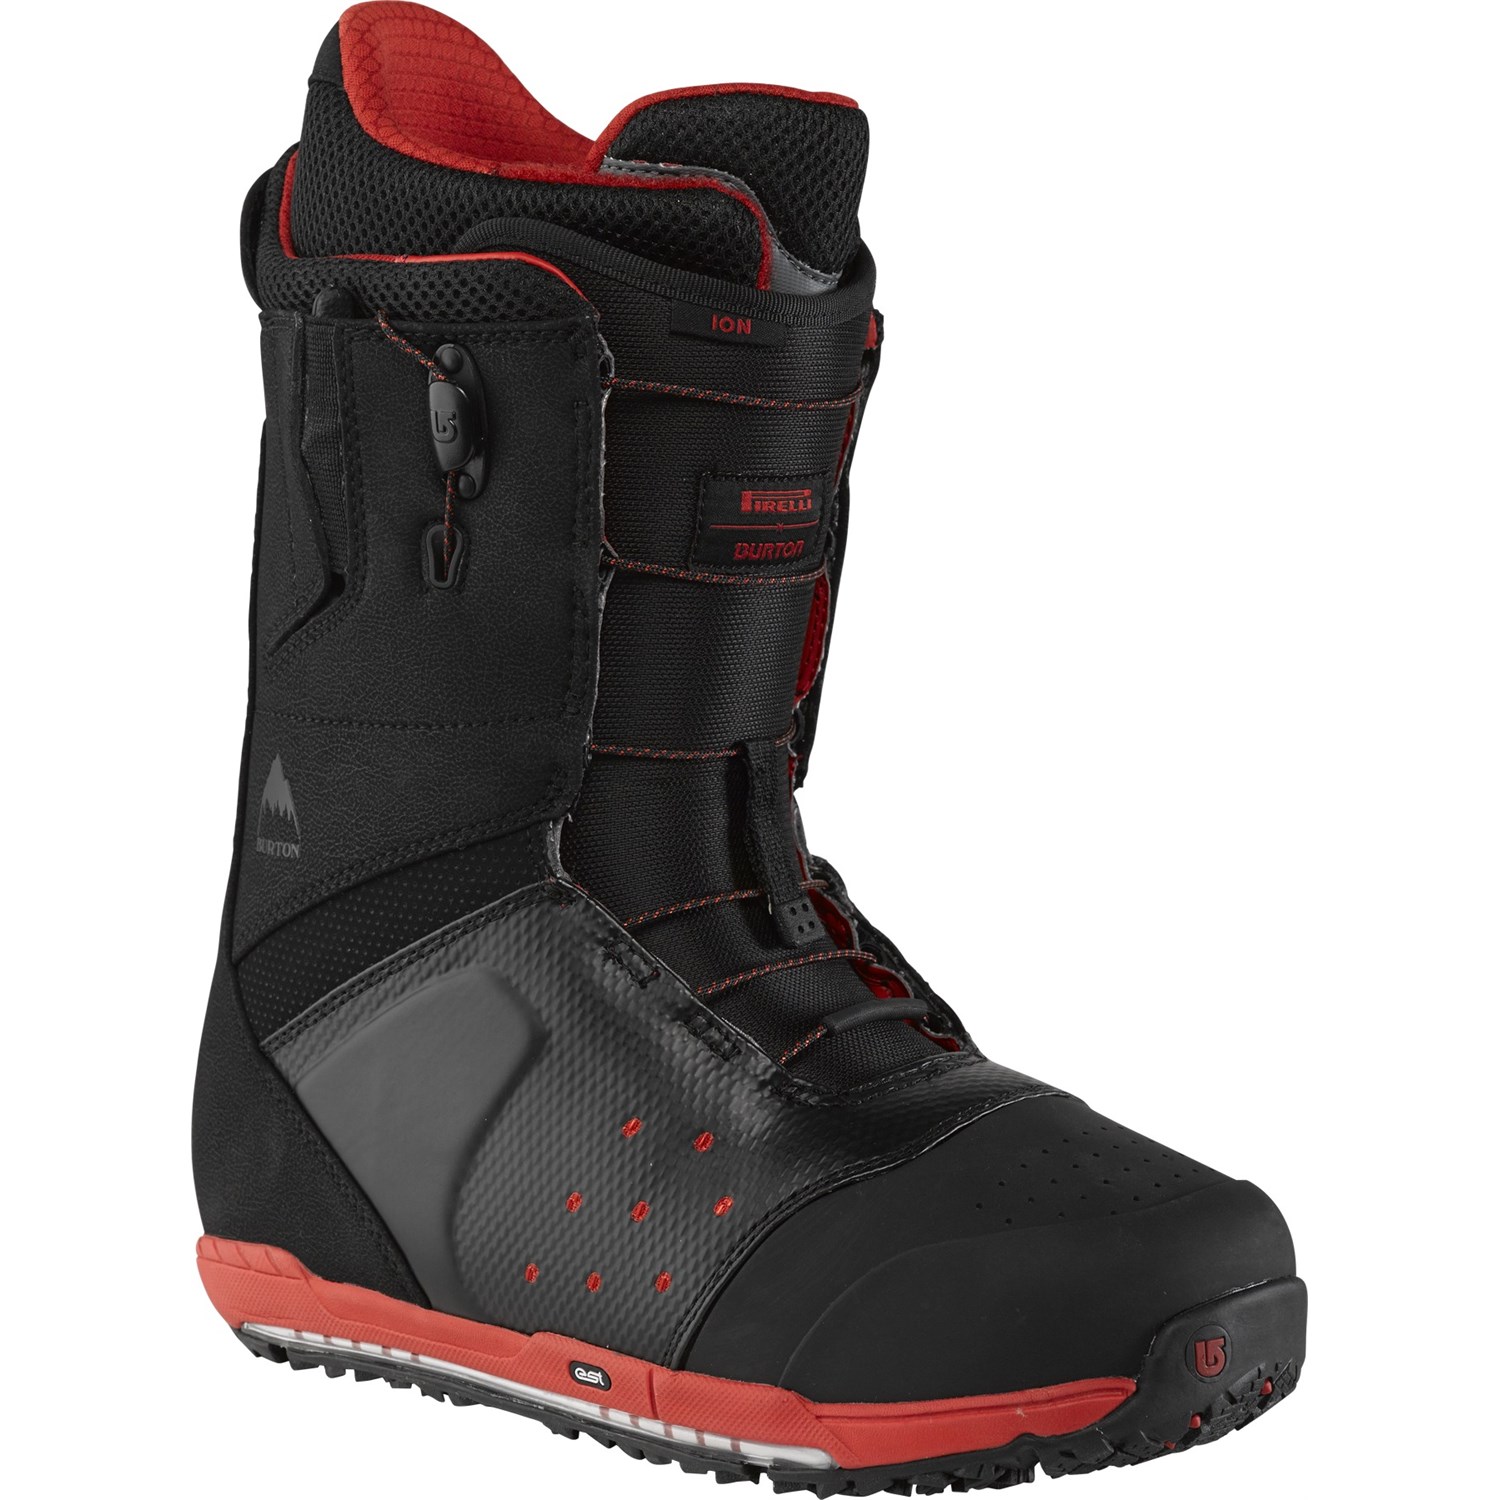 tweeling te binden Voorzien Burton Ion Snowboard Boots 2014 | evo